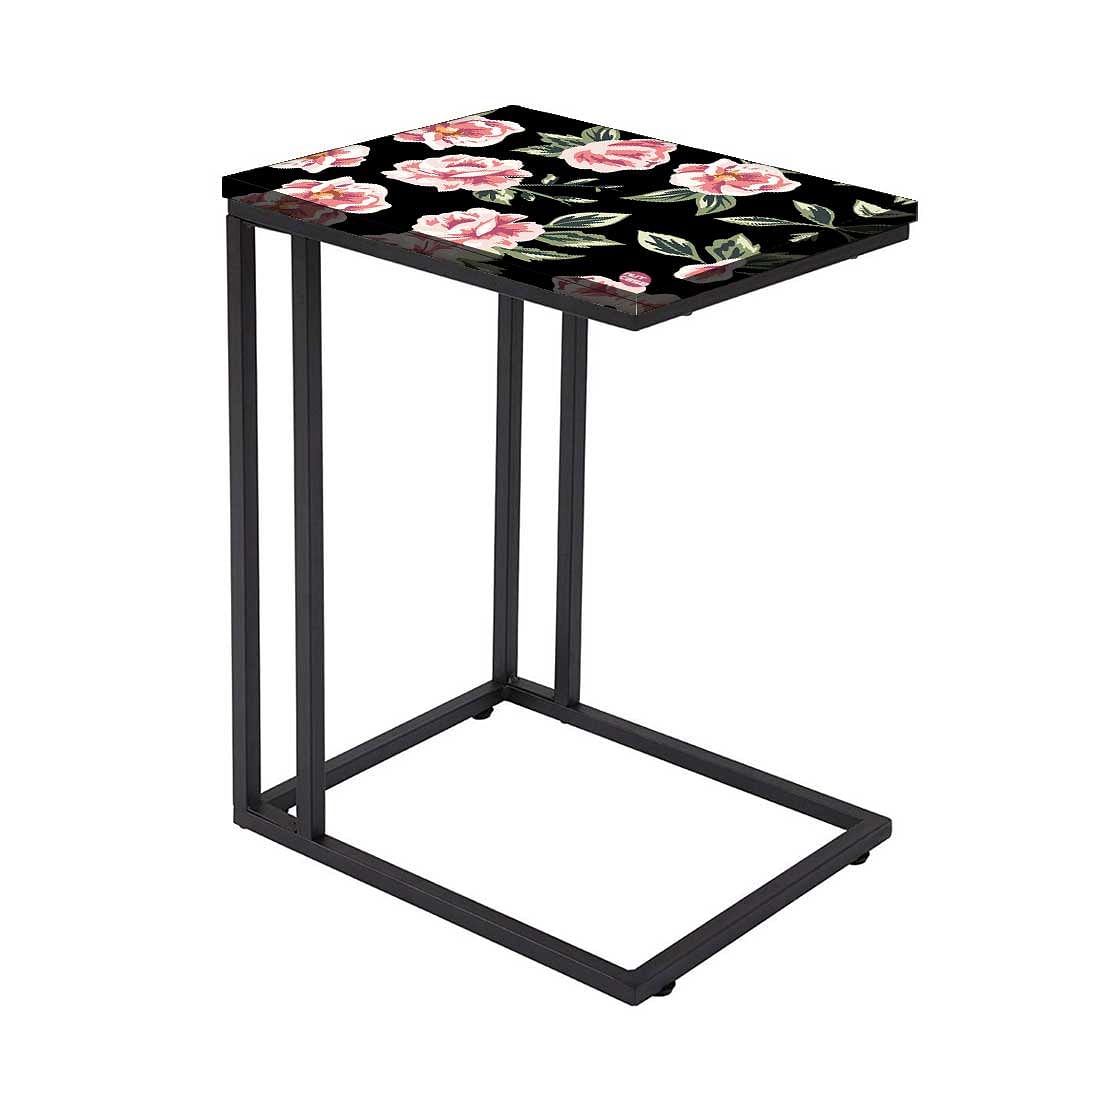 Designer Floral C Shaped Table - Pink Rose Nutcase